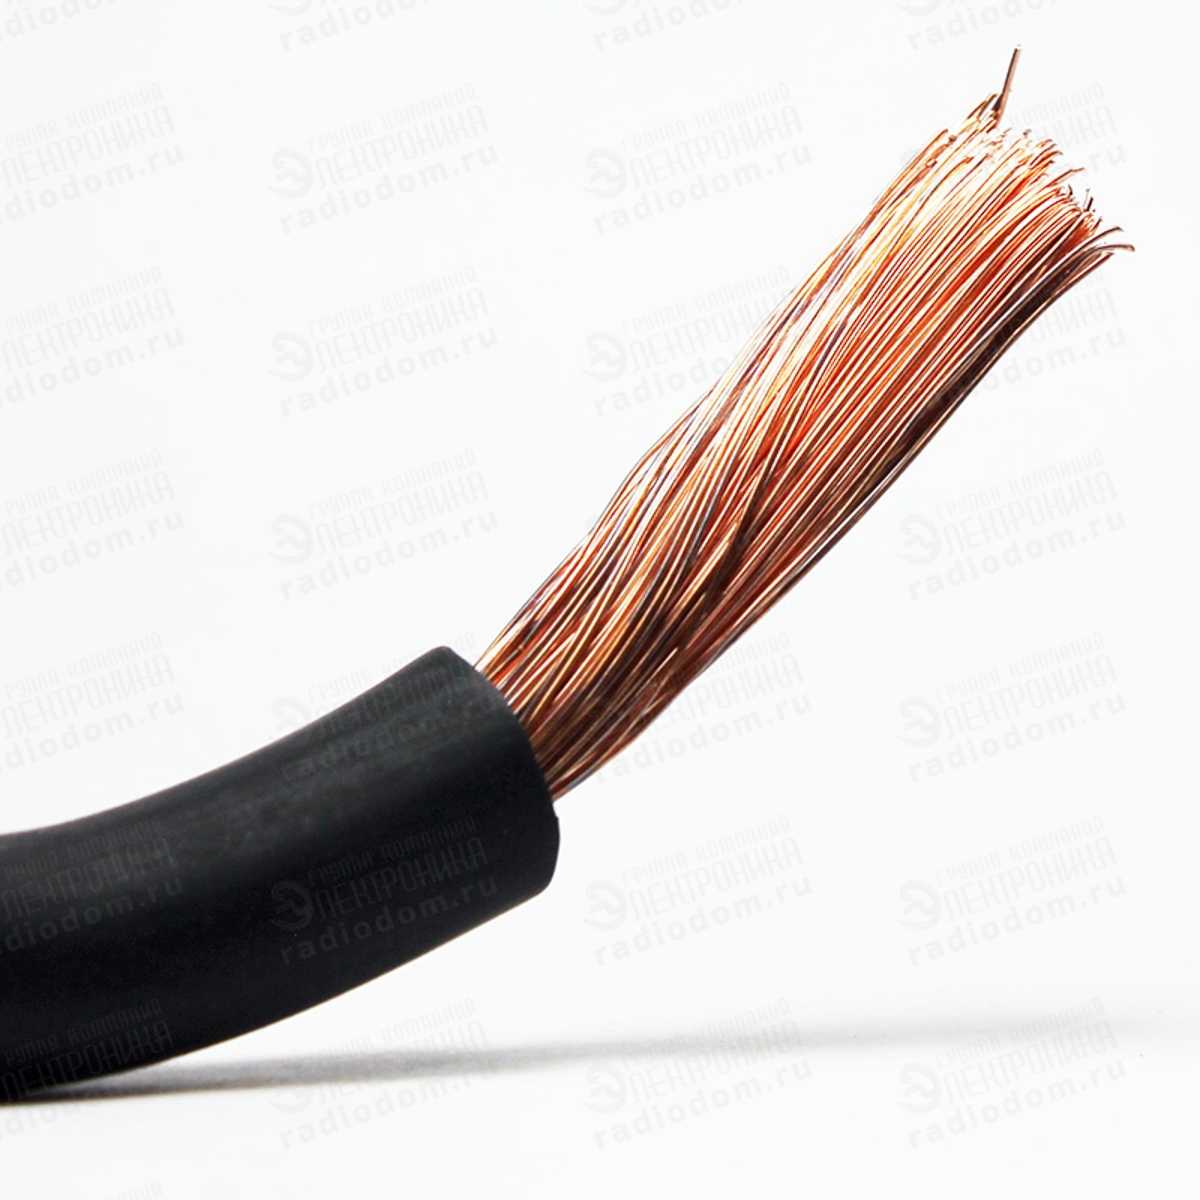 Купить кабель медный силовой гибкий кг в москве по цене от 17 руб. - интернет-магазин элькабель